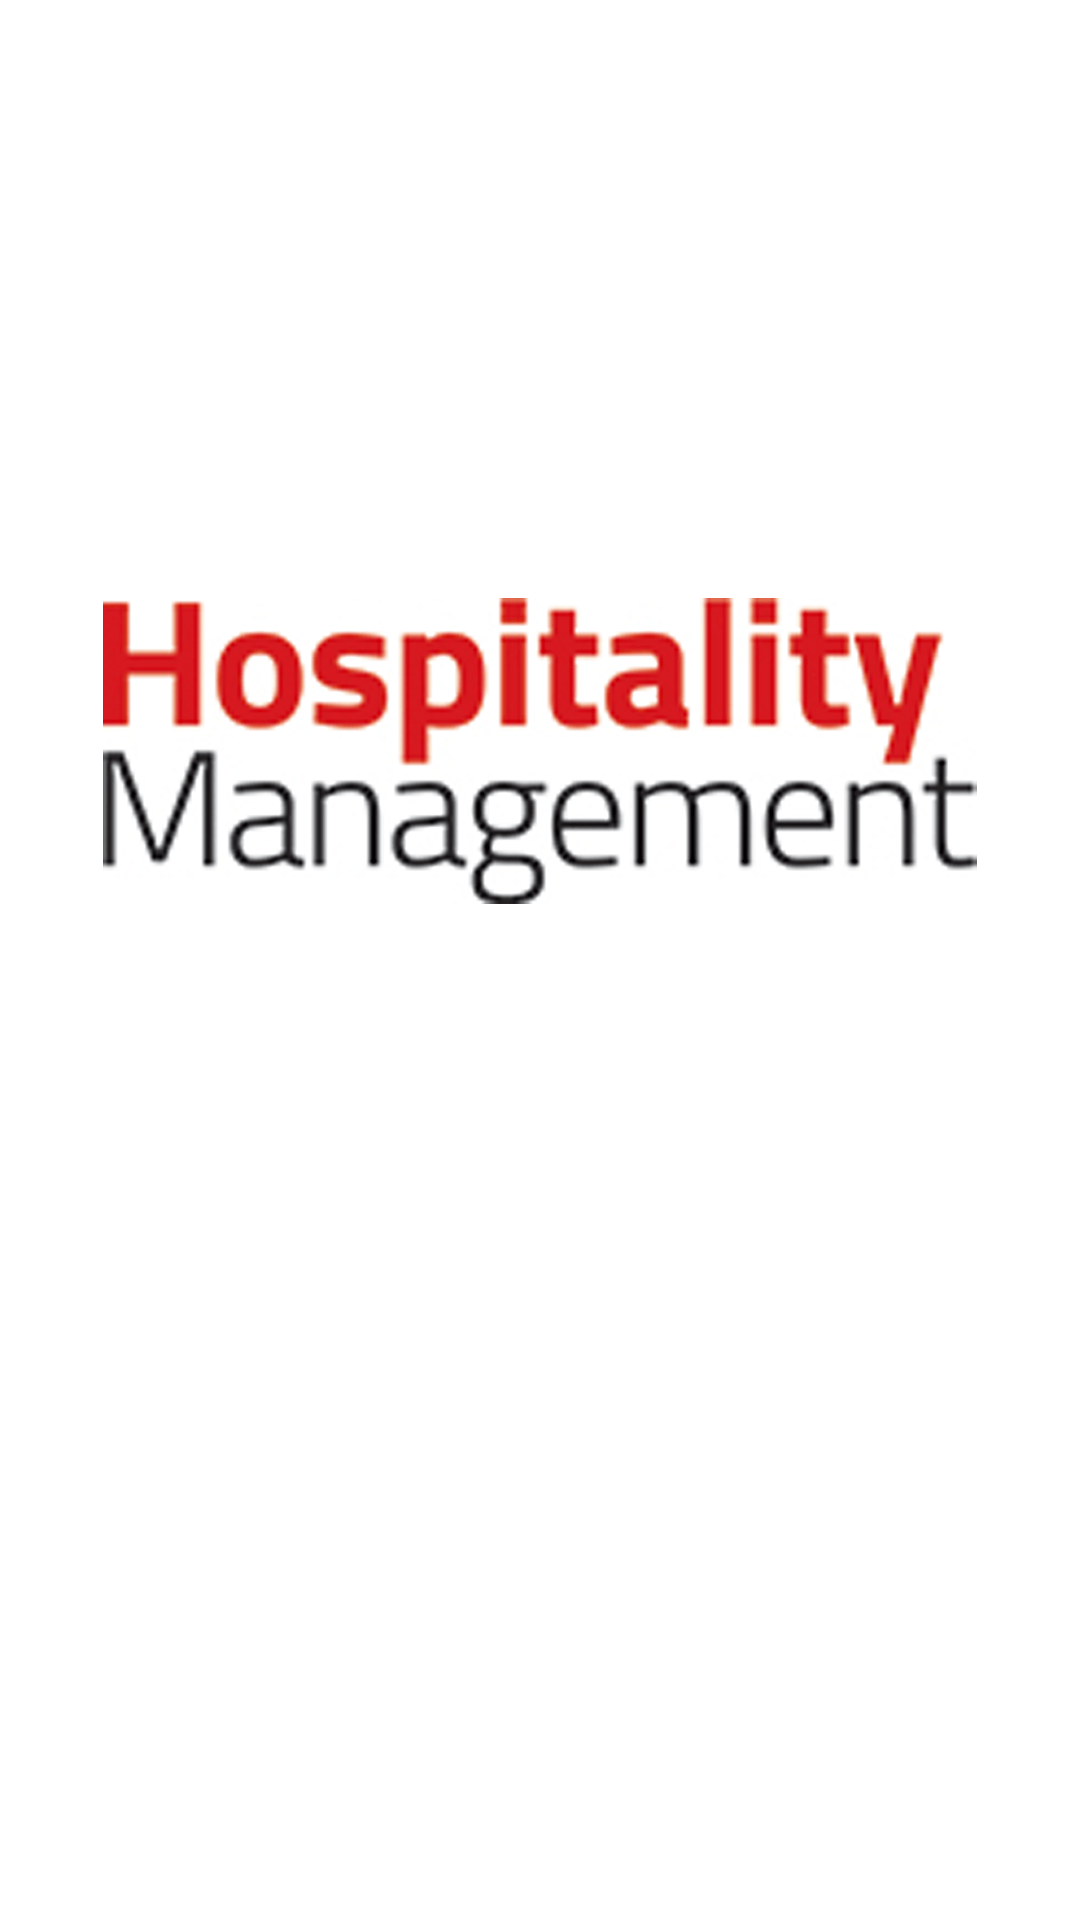 FI_Hospitality Management_blog